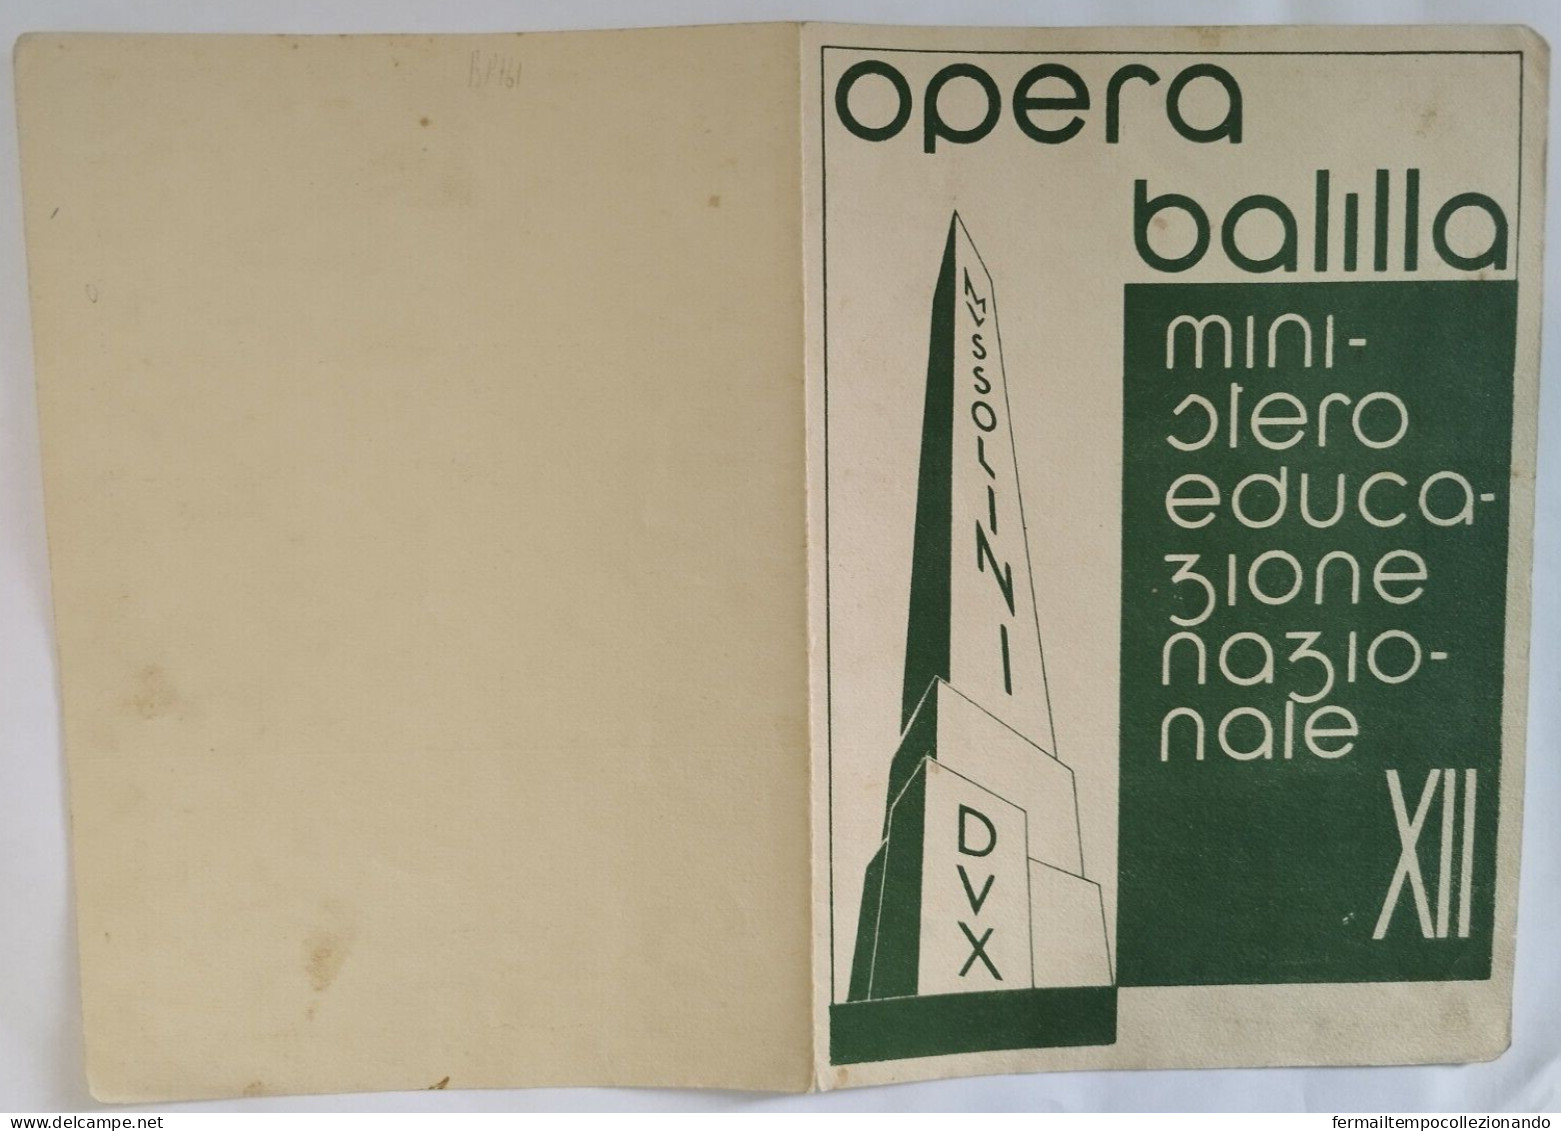 Bp161 Pagella Fascista Regno D'italia Opera Balilla Tizzano Parma 1934 - Diploma & School Reports